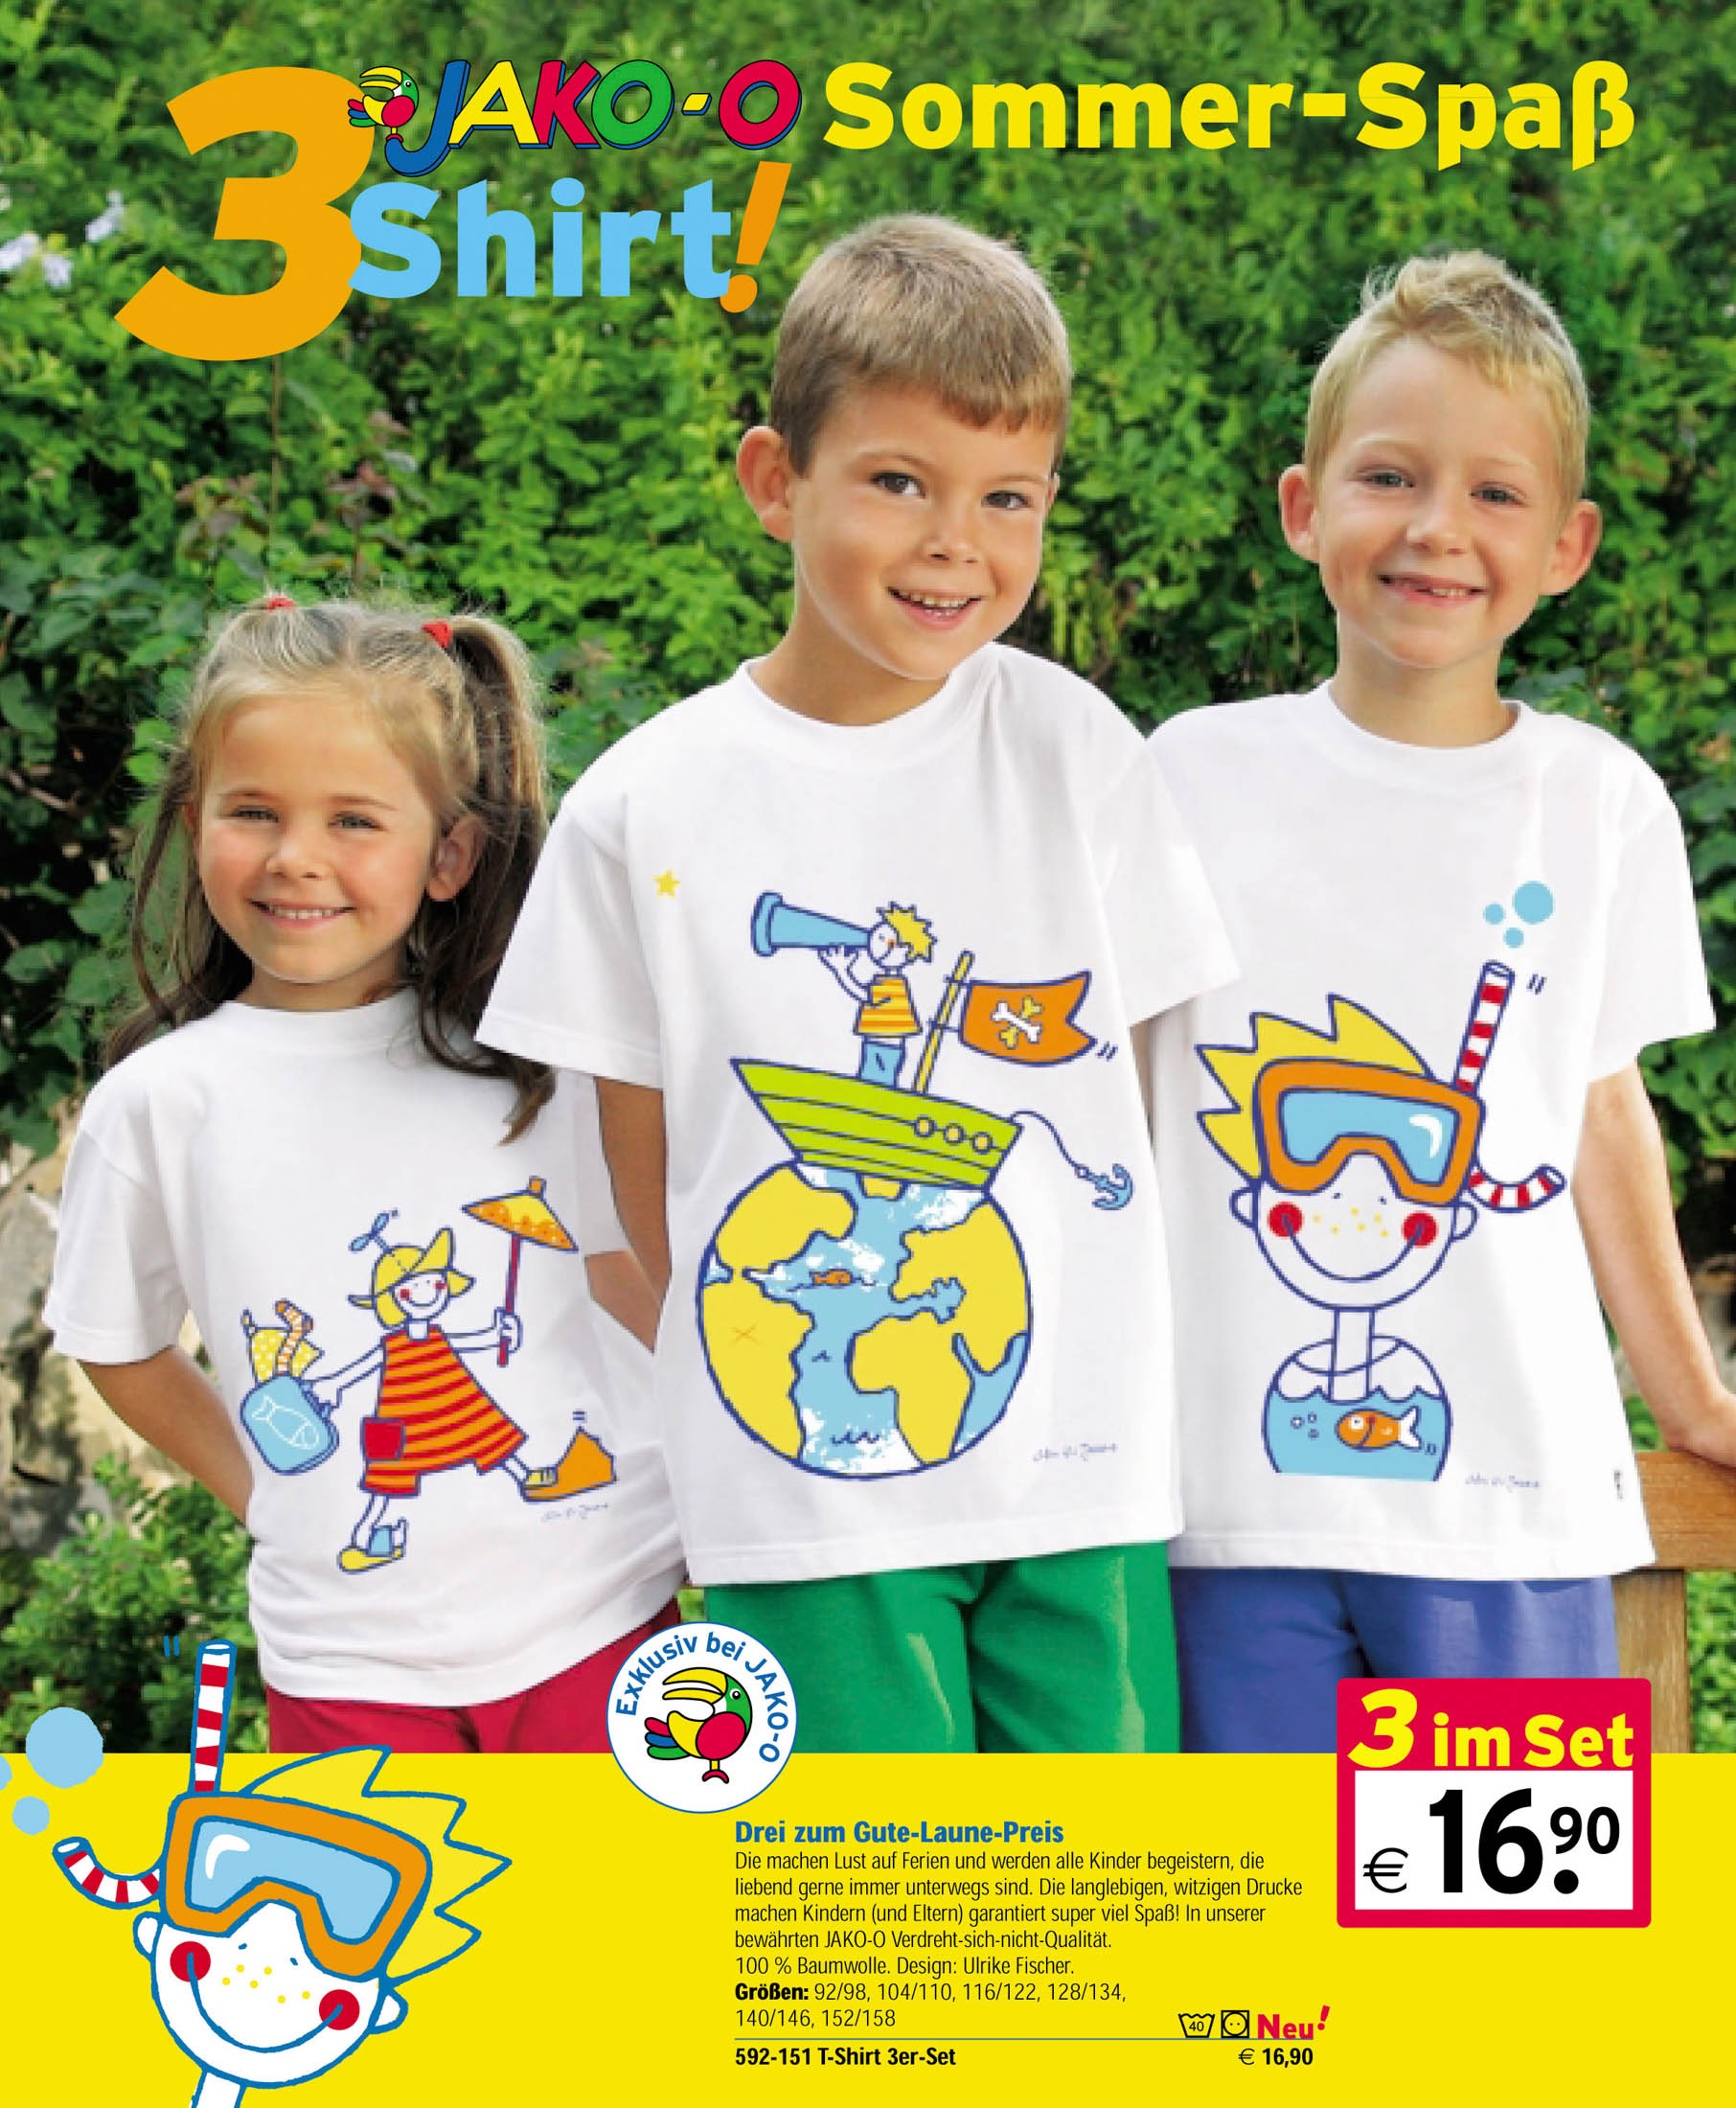 Drei lächelnde Kinder tragen weiße T-Shirts mit bunten Aufdrucken sommerlicher Zeichnungen und stehen im Freien mit grünem Laub im Hintergrund. Text und Preise sind auf Deutsch eingeblendet. © Fotografie Tomas Rodriguez